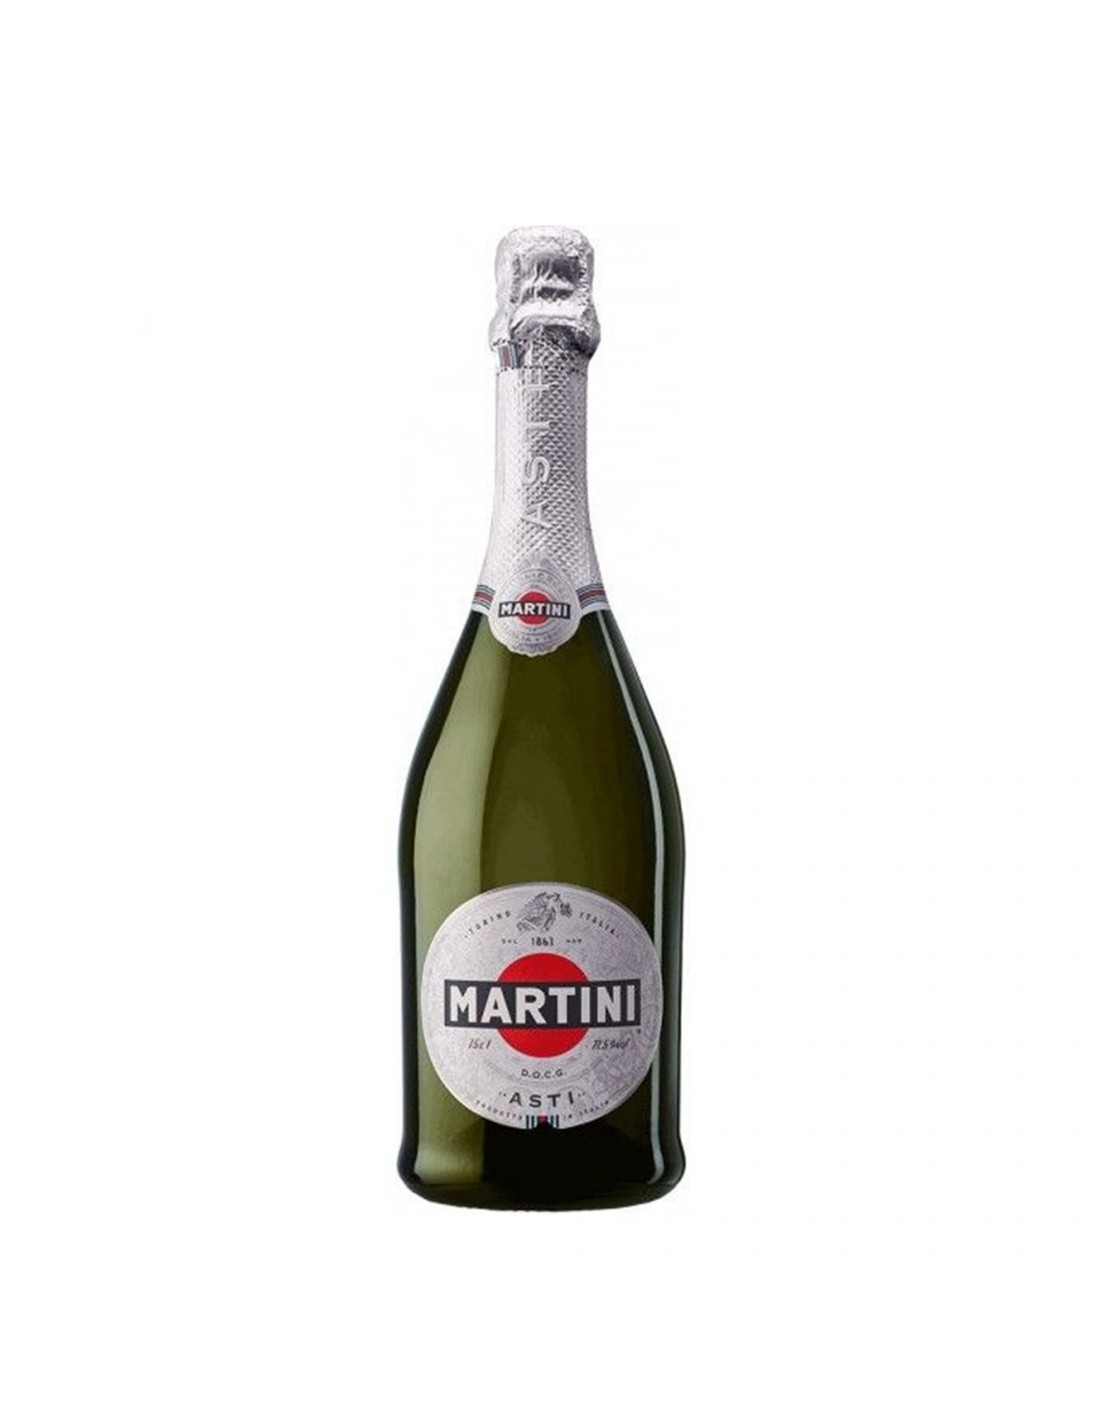 Vin spumant alb demidulce Martini Asti, 0.75L, 7.50% alc., Italia alcooldiscount.ro